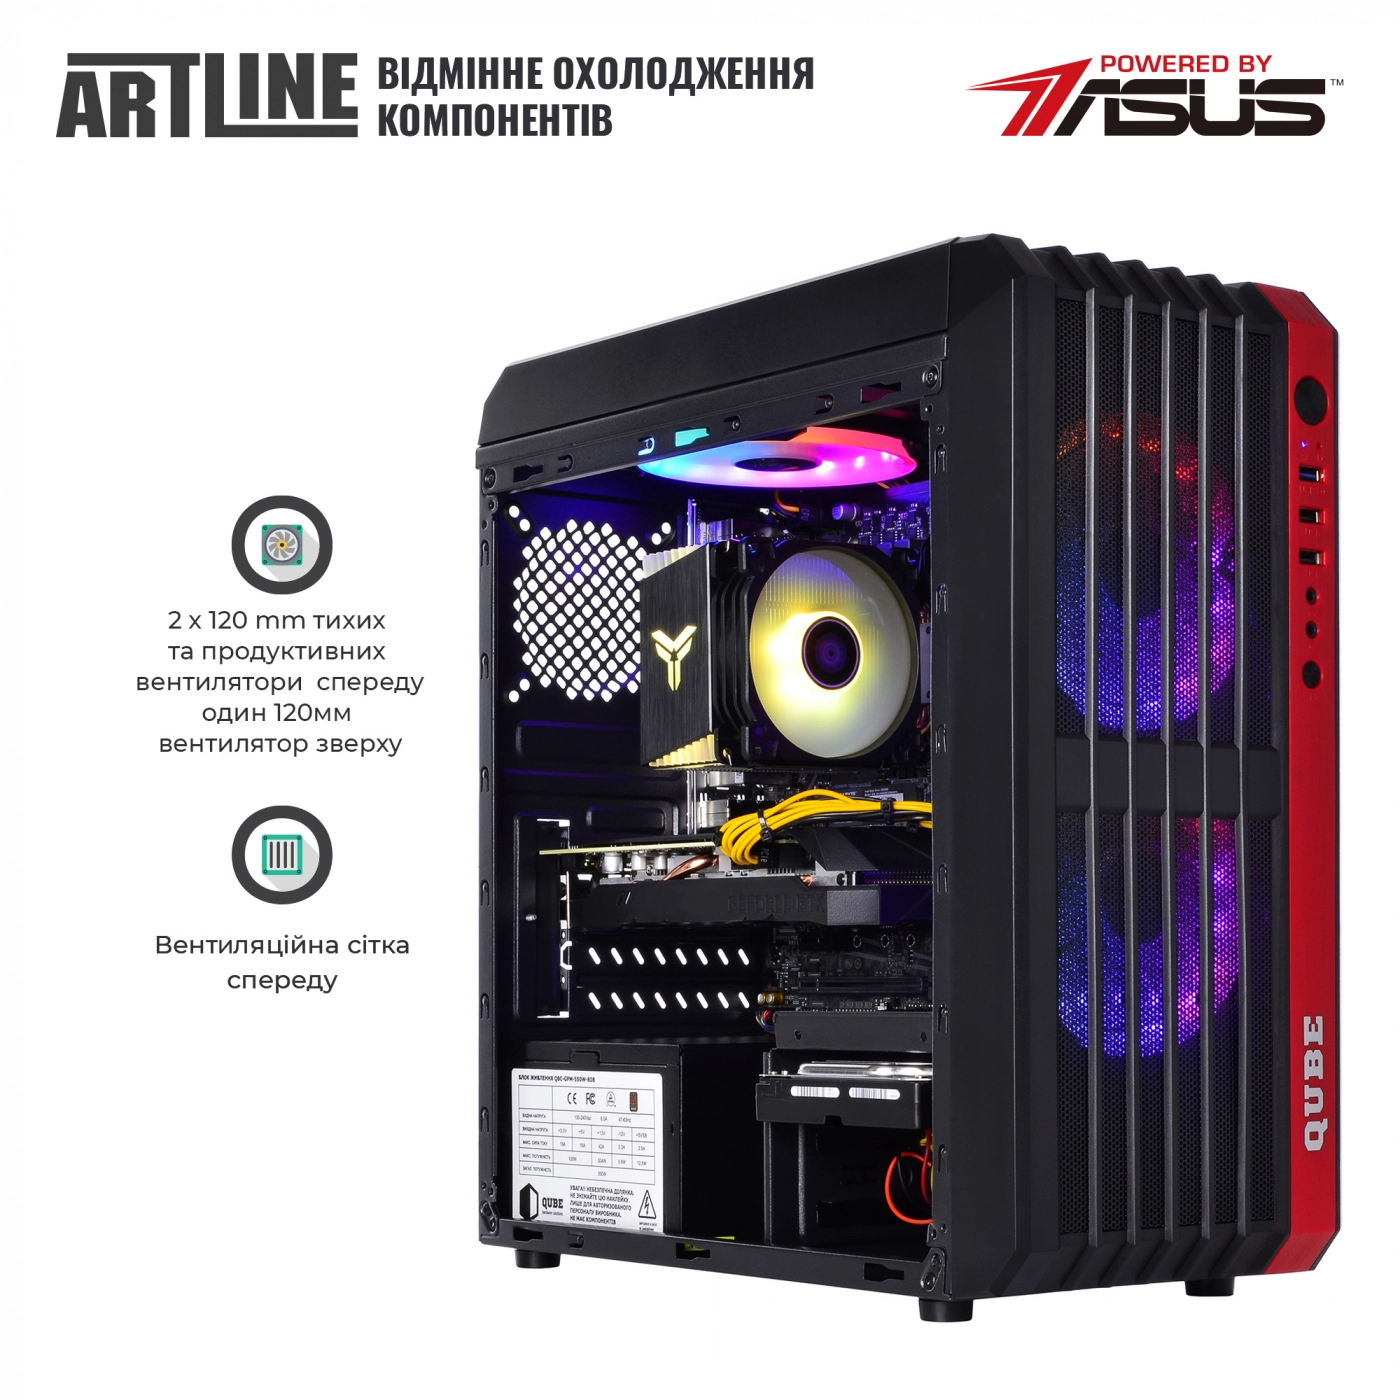 Купить Компьютер ARTLINE Gaming X37v36 - фото 2